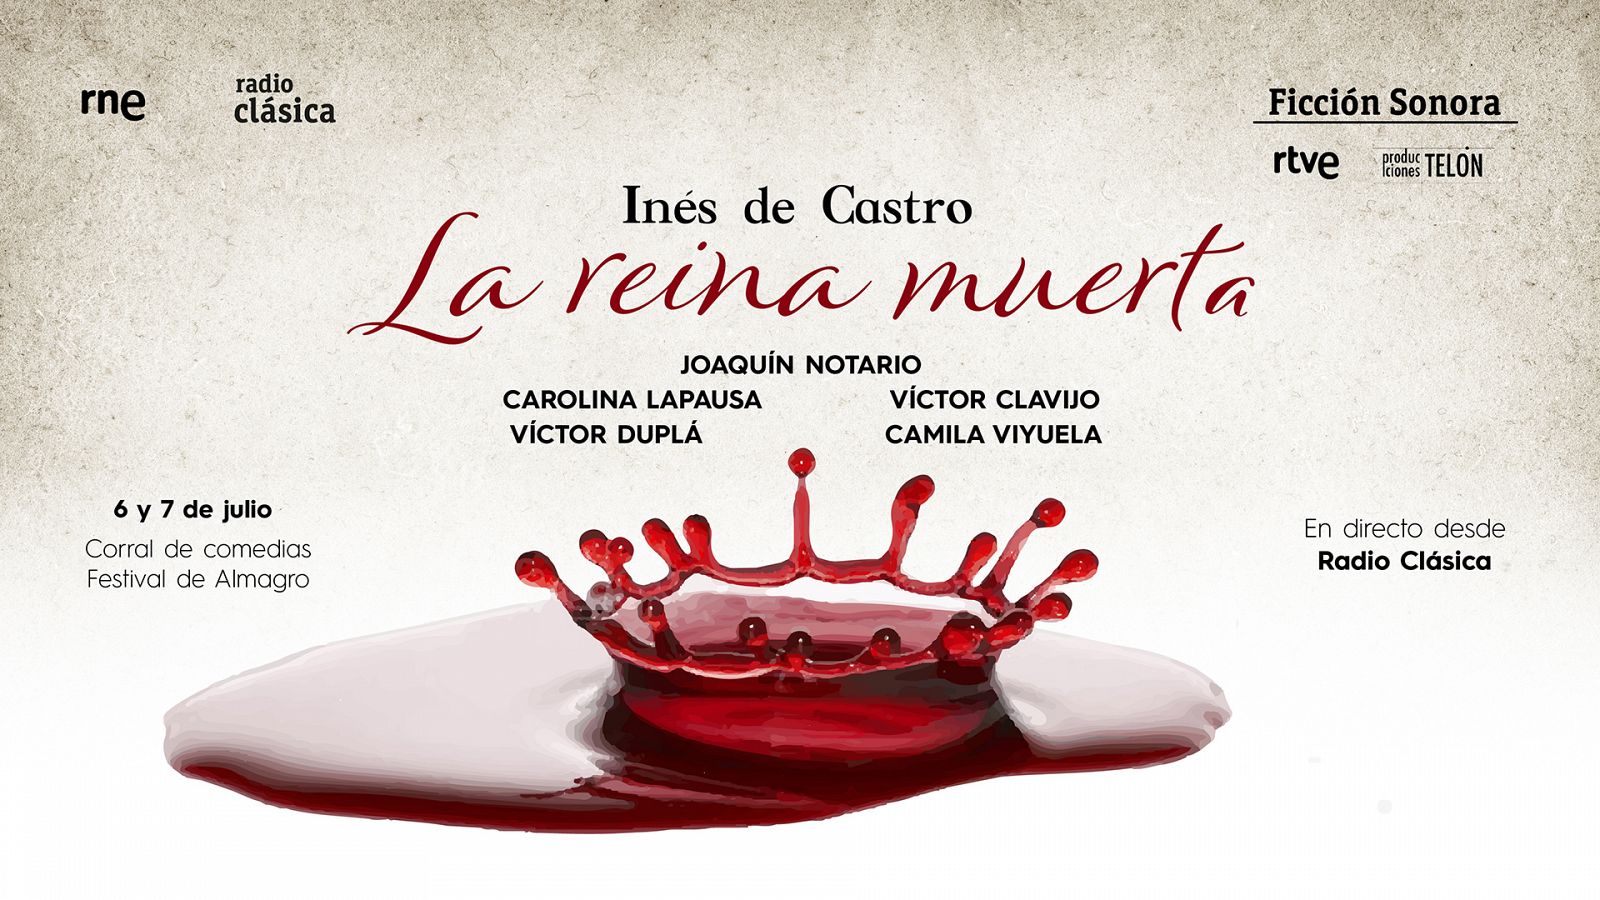 'La reina muerta': la ficcin sonora que cuenta la historia de Ins de Castro, la reina cadver de Portugal